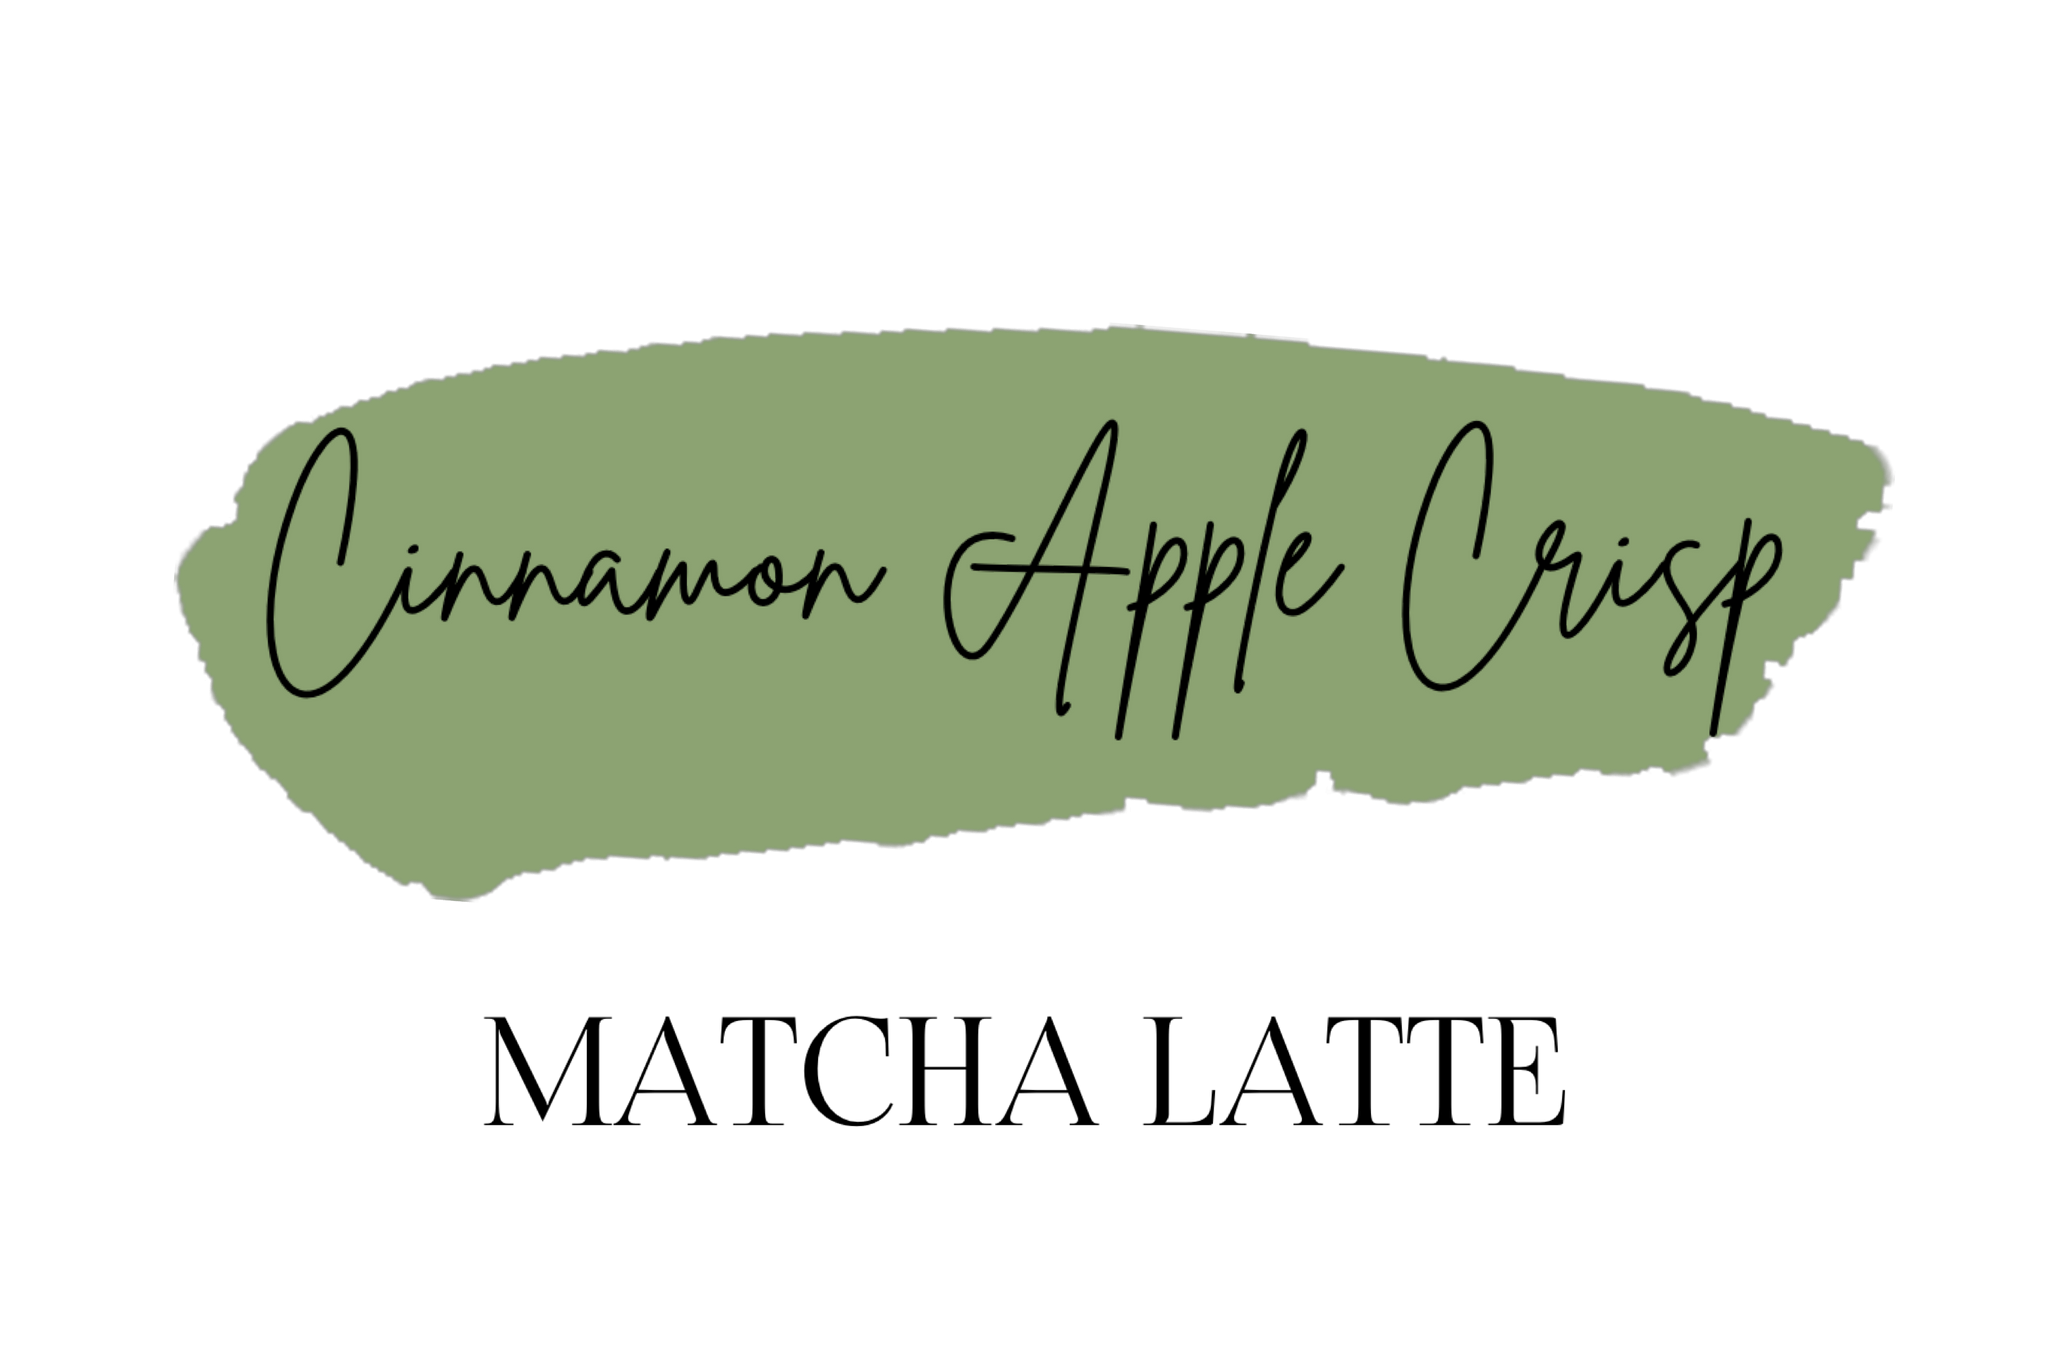 Cinnamon Apple Crisp